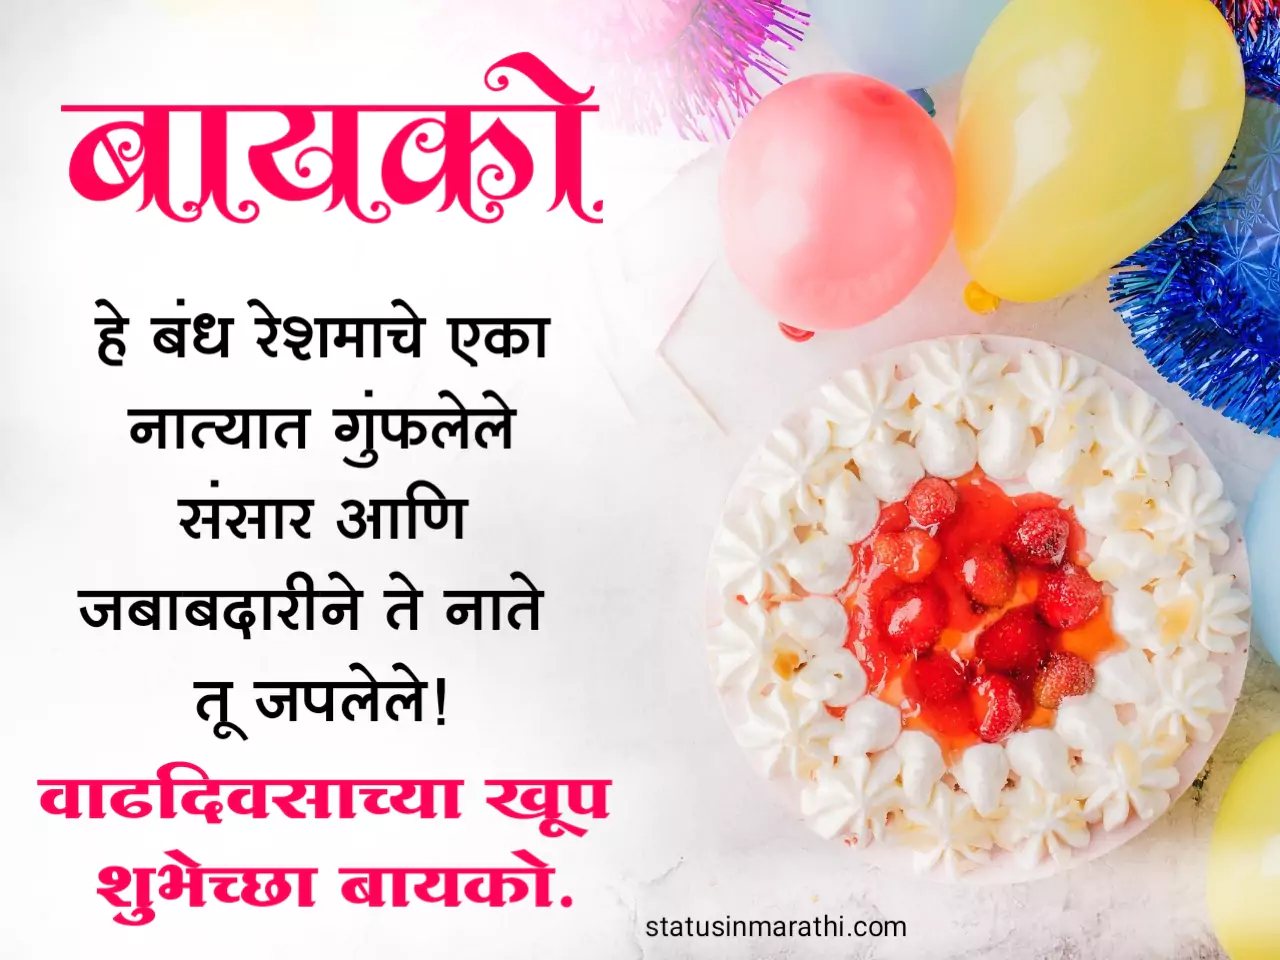 bayko birthday wishes in marathi 